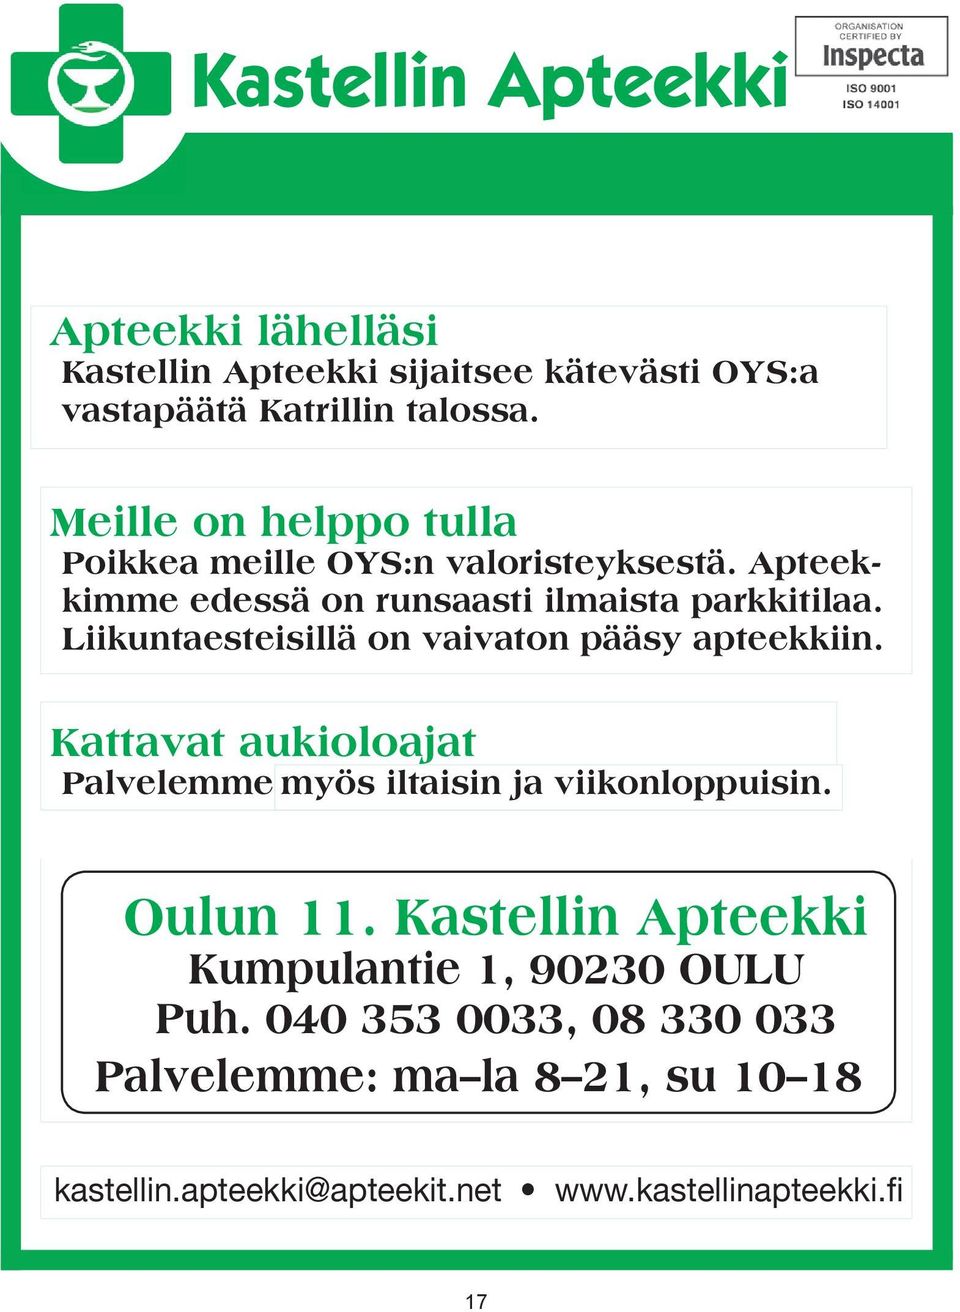 ilmaista parkkitilaa. Apteekkimme edessä on on Liikuntaesteisillä Apteekkari-lehden järjestämä kilpailu: Kastellin runsaasti vaivaton apteekissa ilmaista pääsy Suomen paras parkkitilaa. apteekkiin.